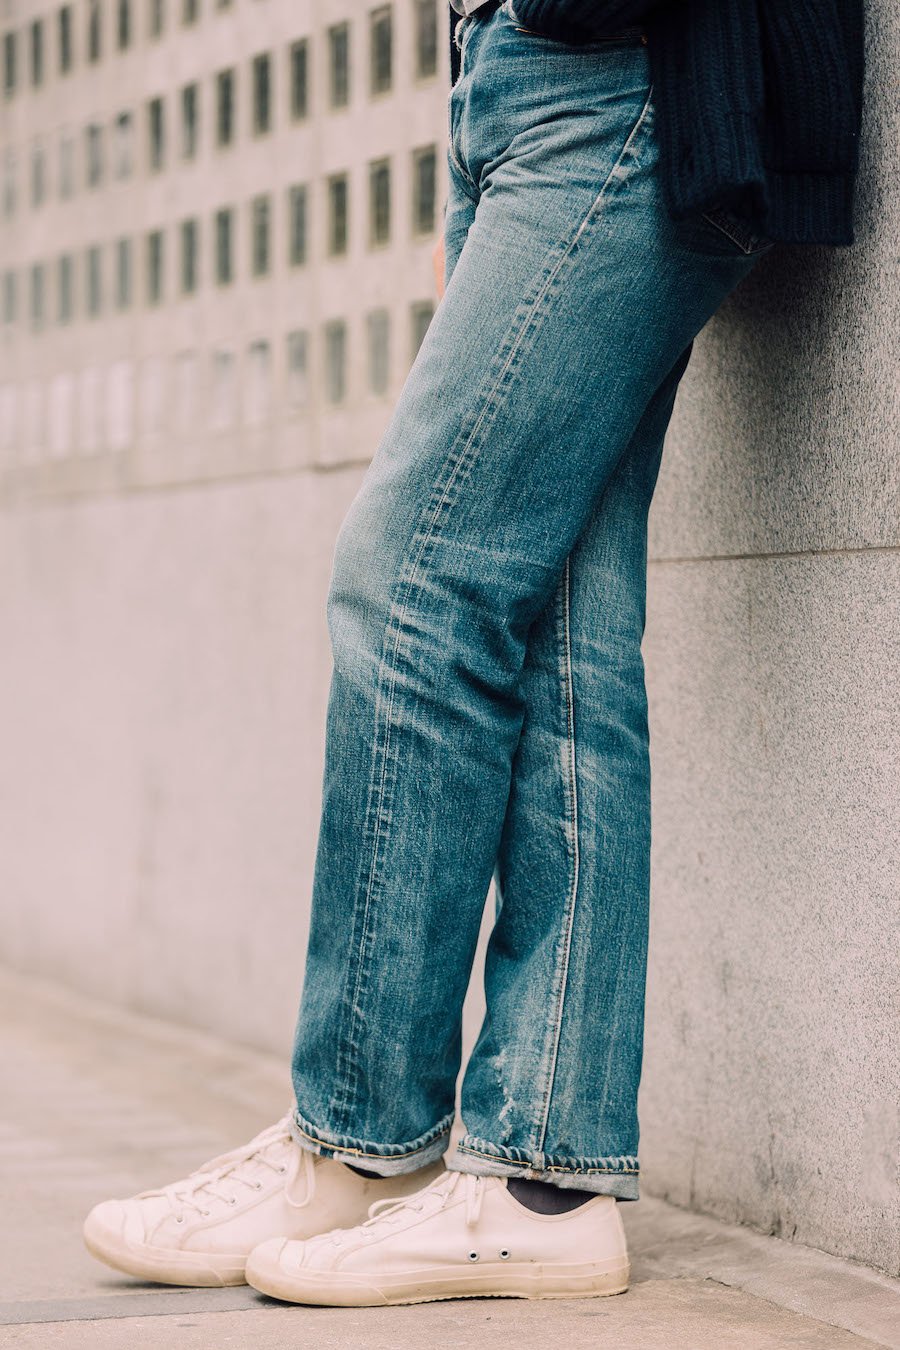 vintage levis jeans mens